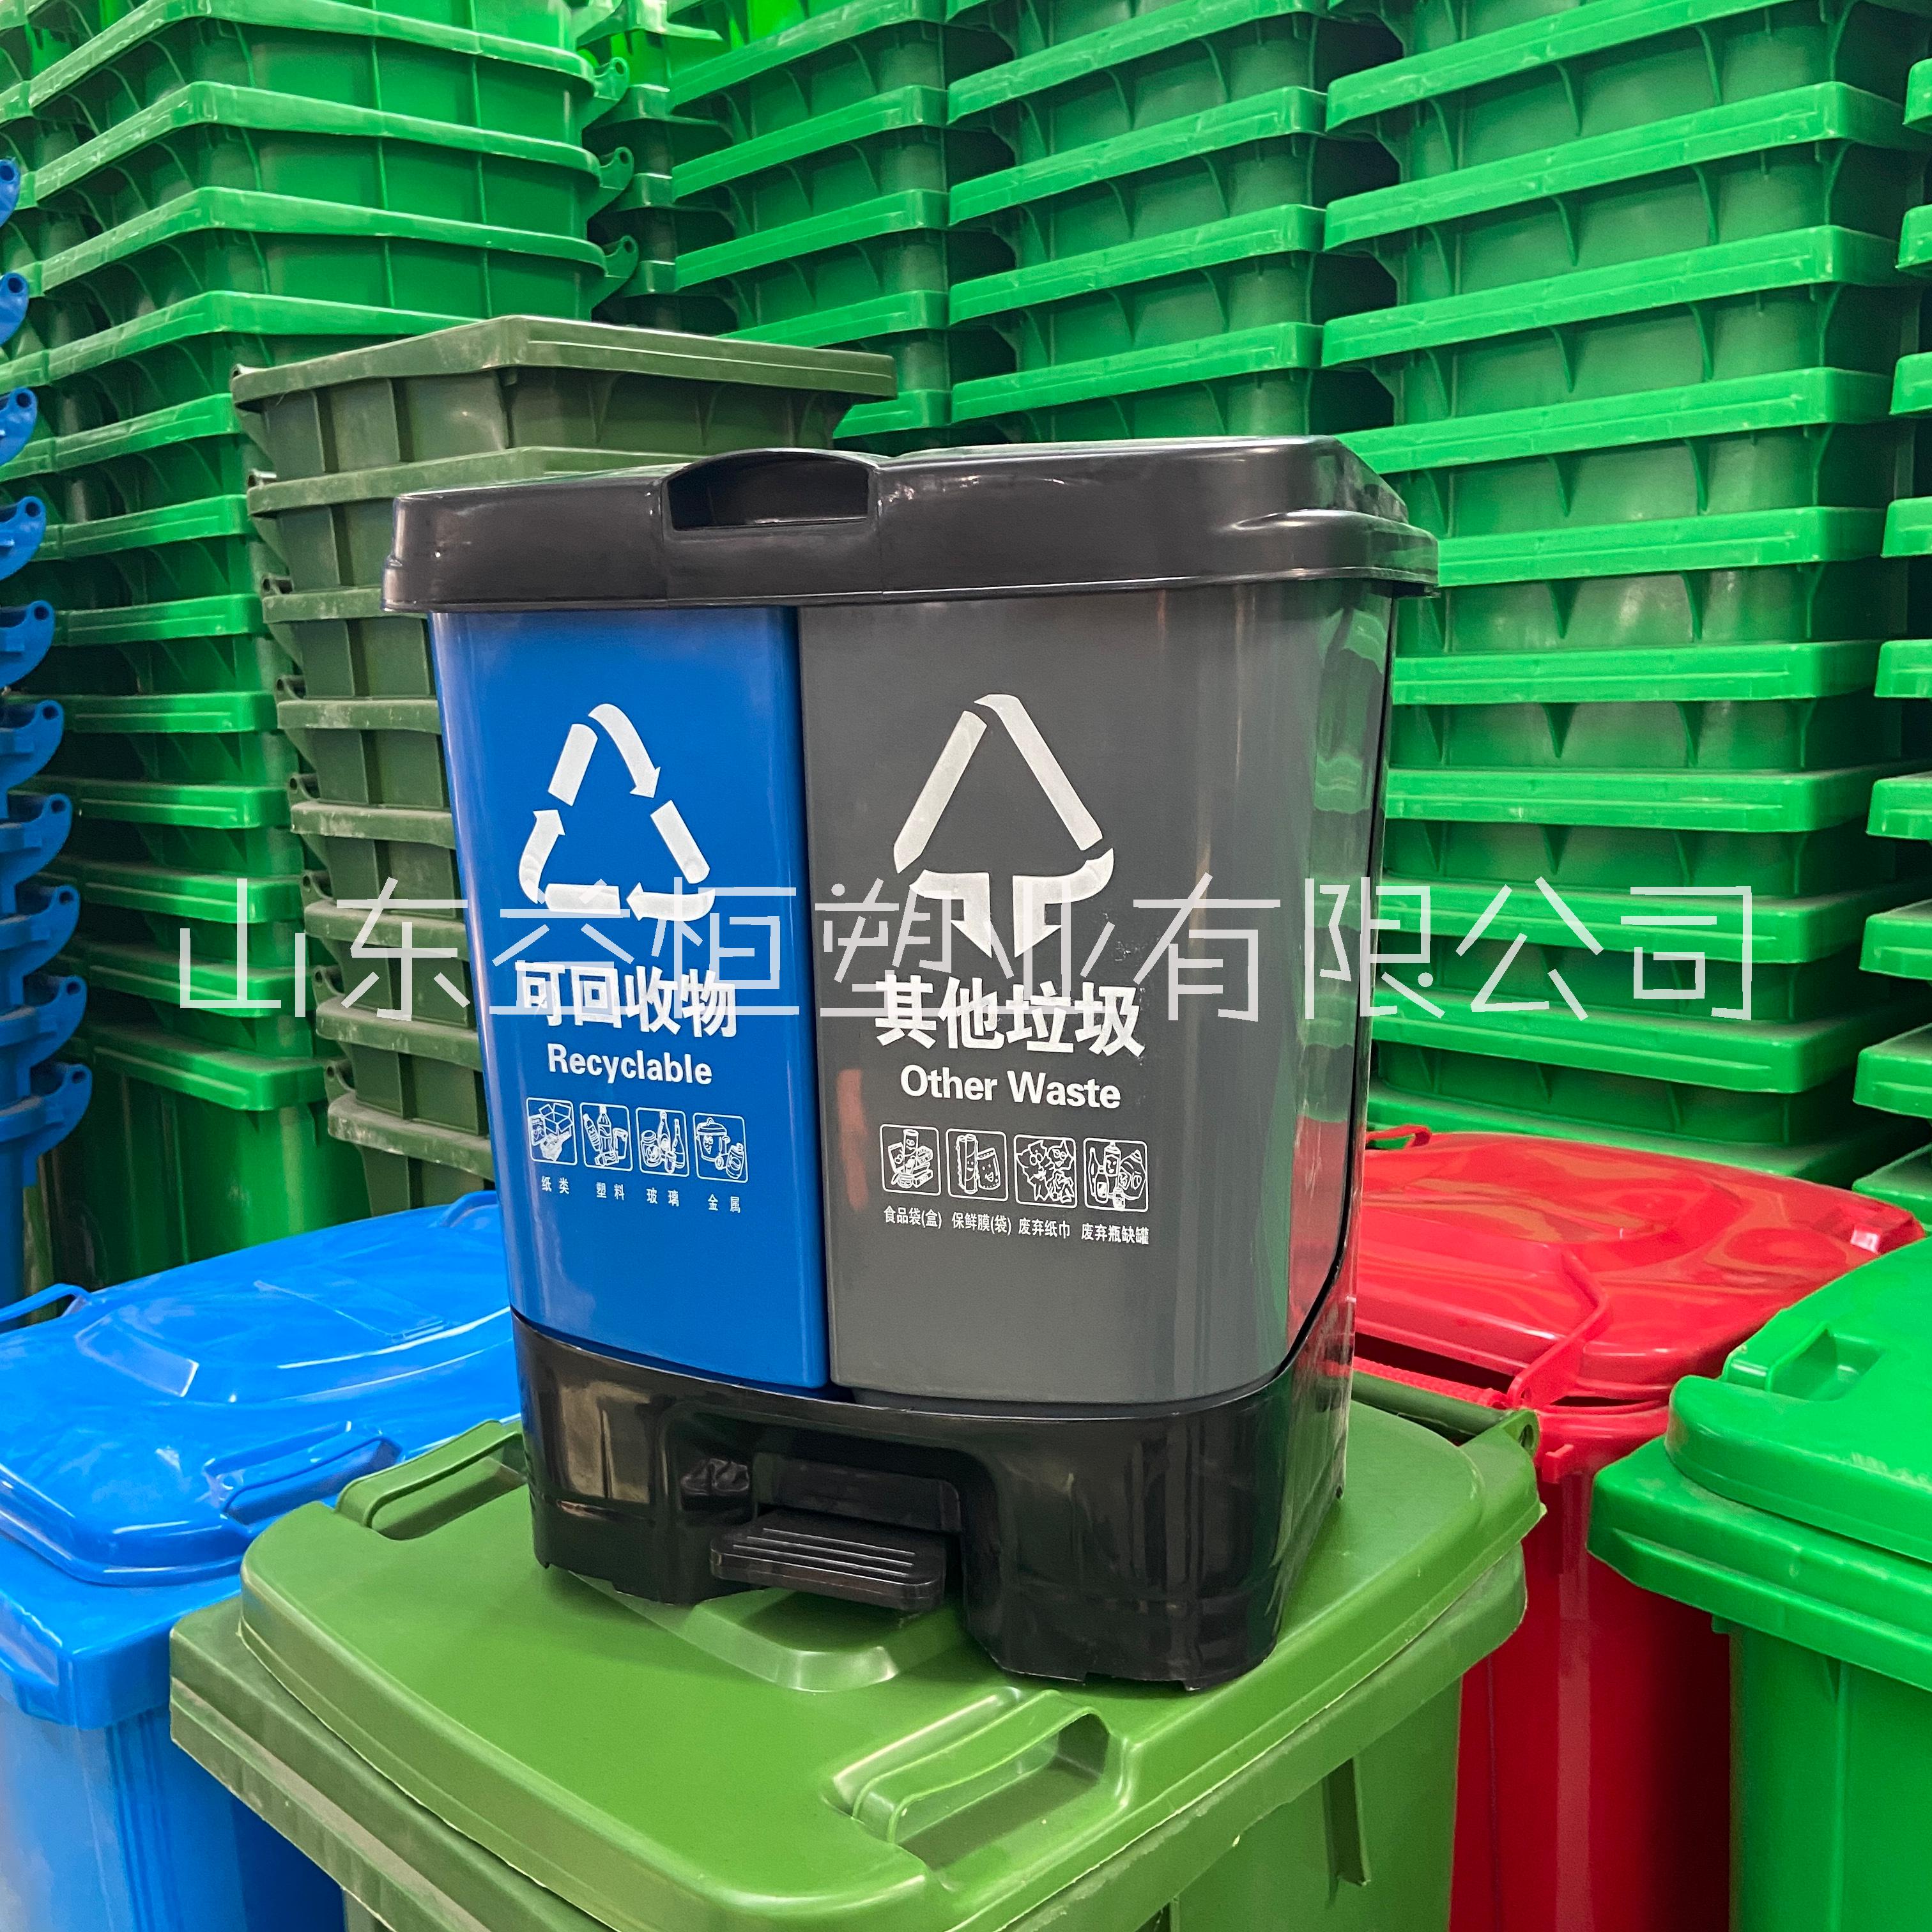 吉林省小区塑料环卫垃圾桶厂家直销 型号齐全欢迎选购